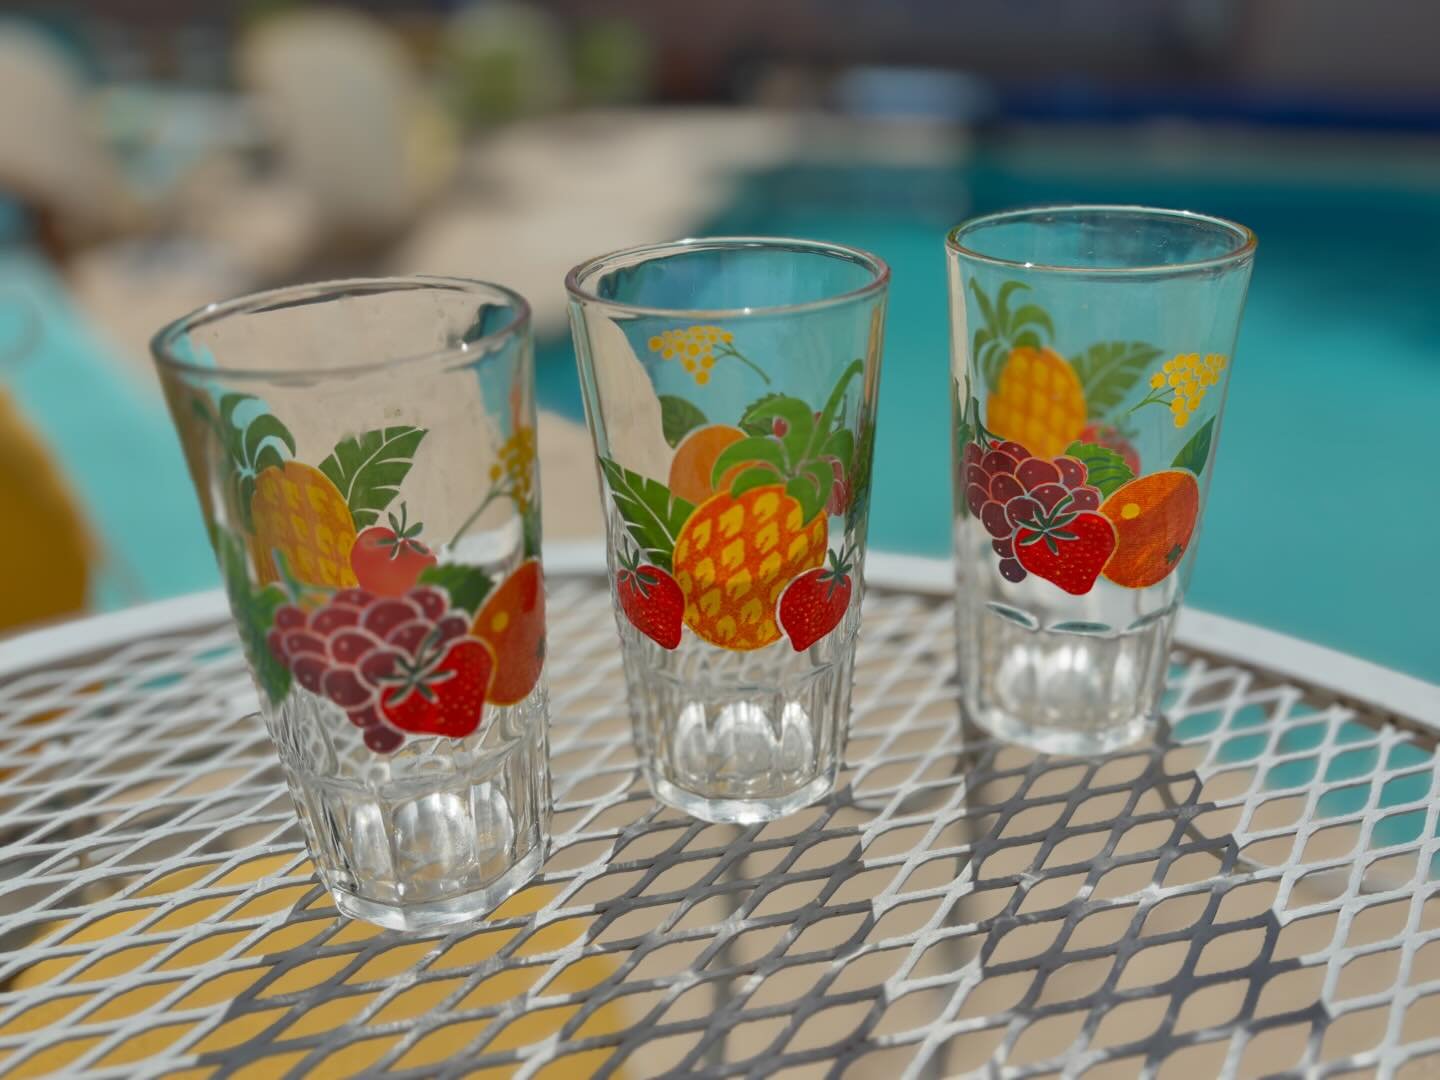 Fun vintage glasses from an estate sale Thursday. #vintagefinds

#vintageglass #vintagefruit #palmspringsstyle #vintagestyle #myhomestyle #homestyle #estatesale #estatesalefinds #vintagedecor #instahome #home #retrodecor #albuquerque #newmexico #vint